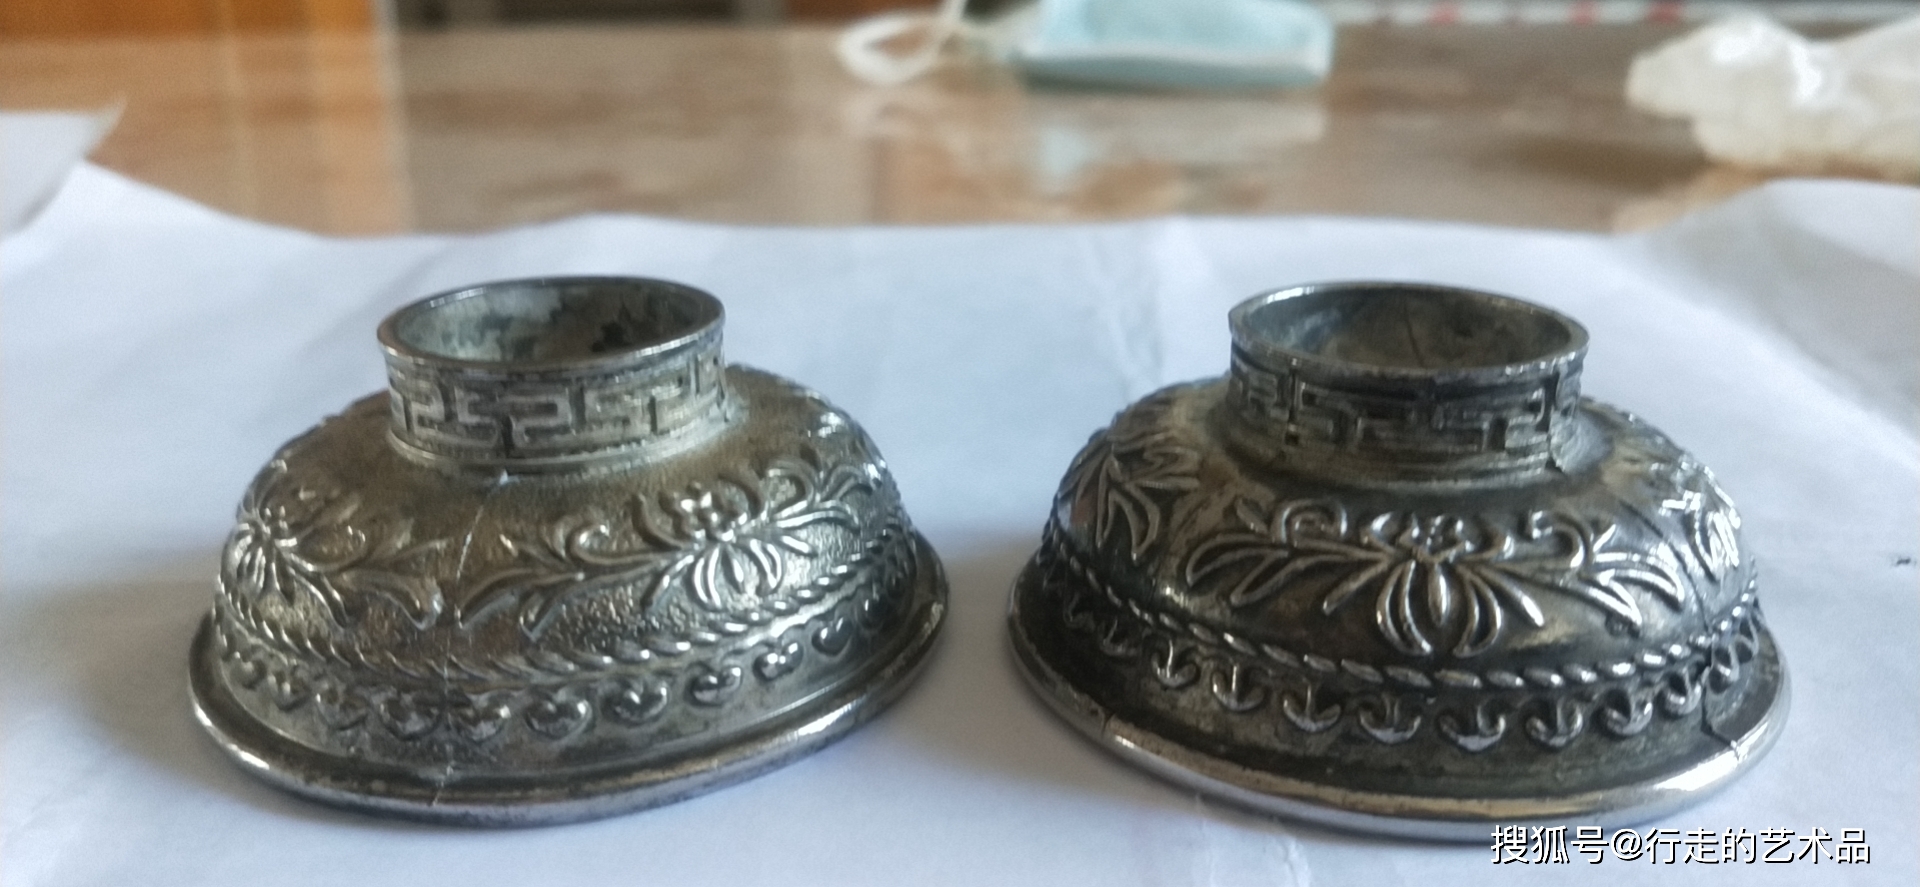 碗在中国古代是常见的传家宝,大户人家在银碗上刻有"寿"的字样,希望